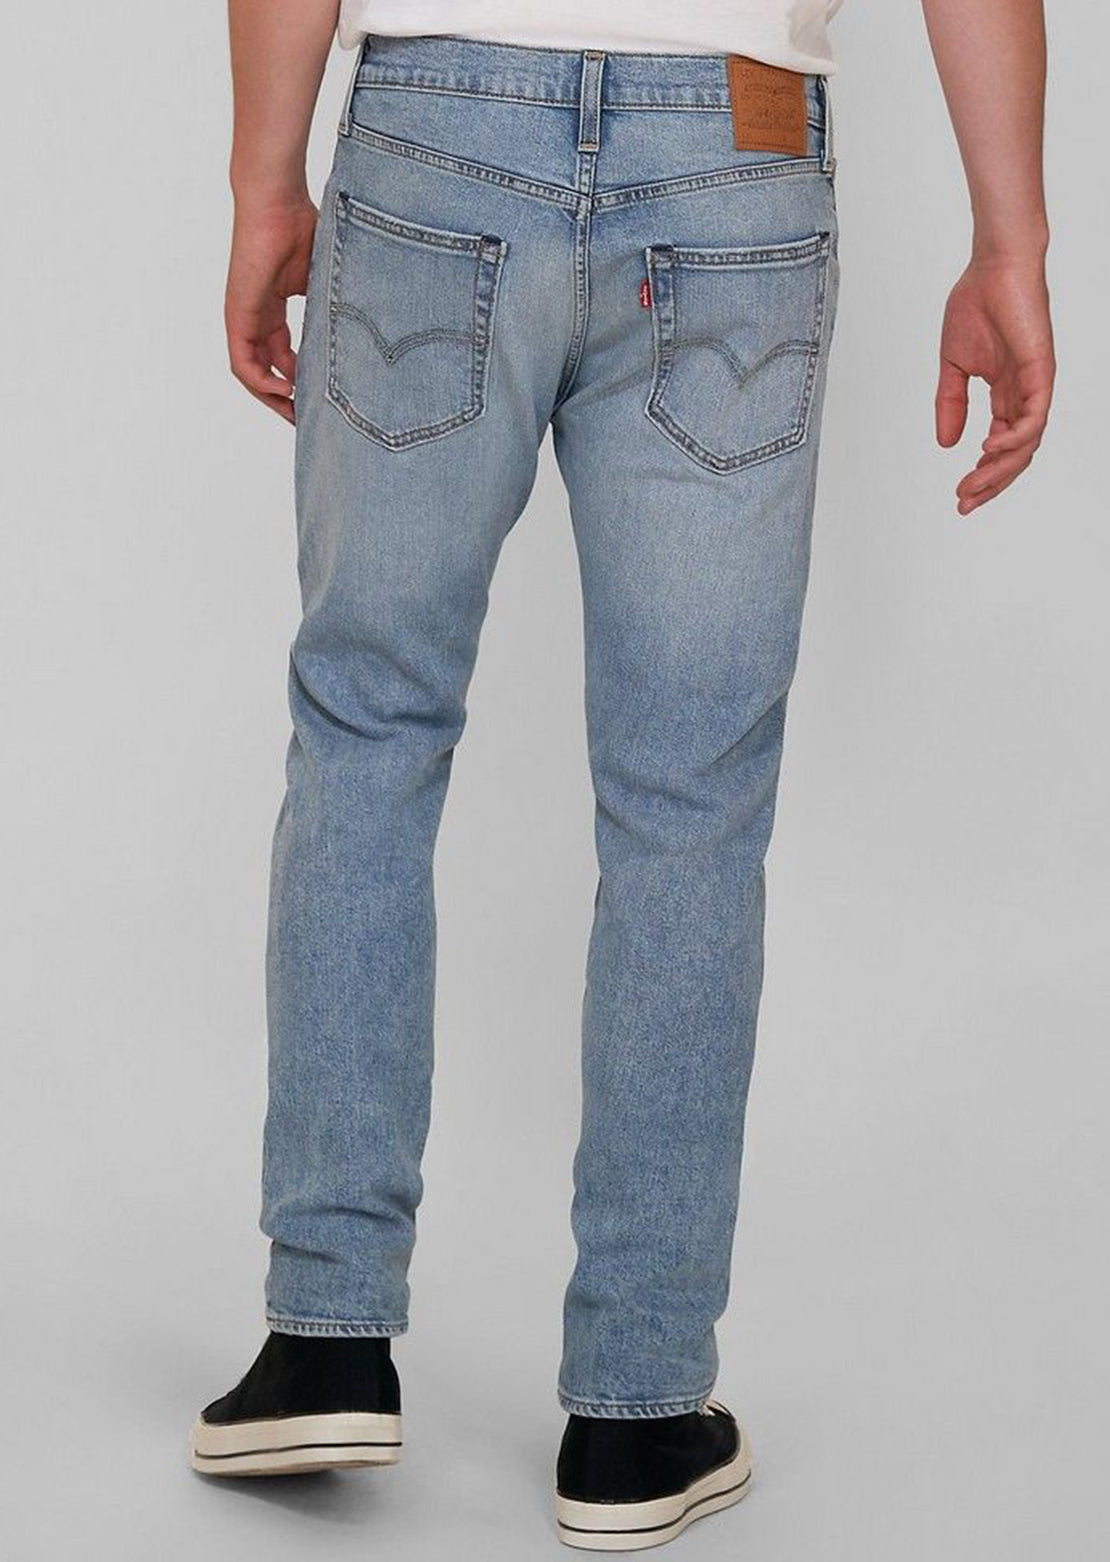 Levi's Men's 512 Slim Taper Jeans - PRFO Sports